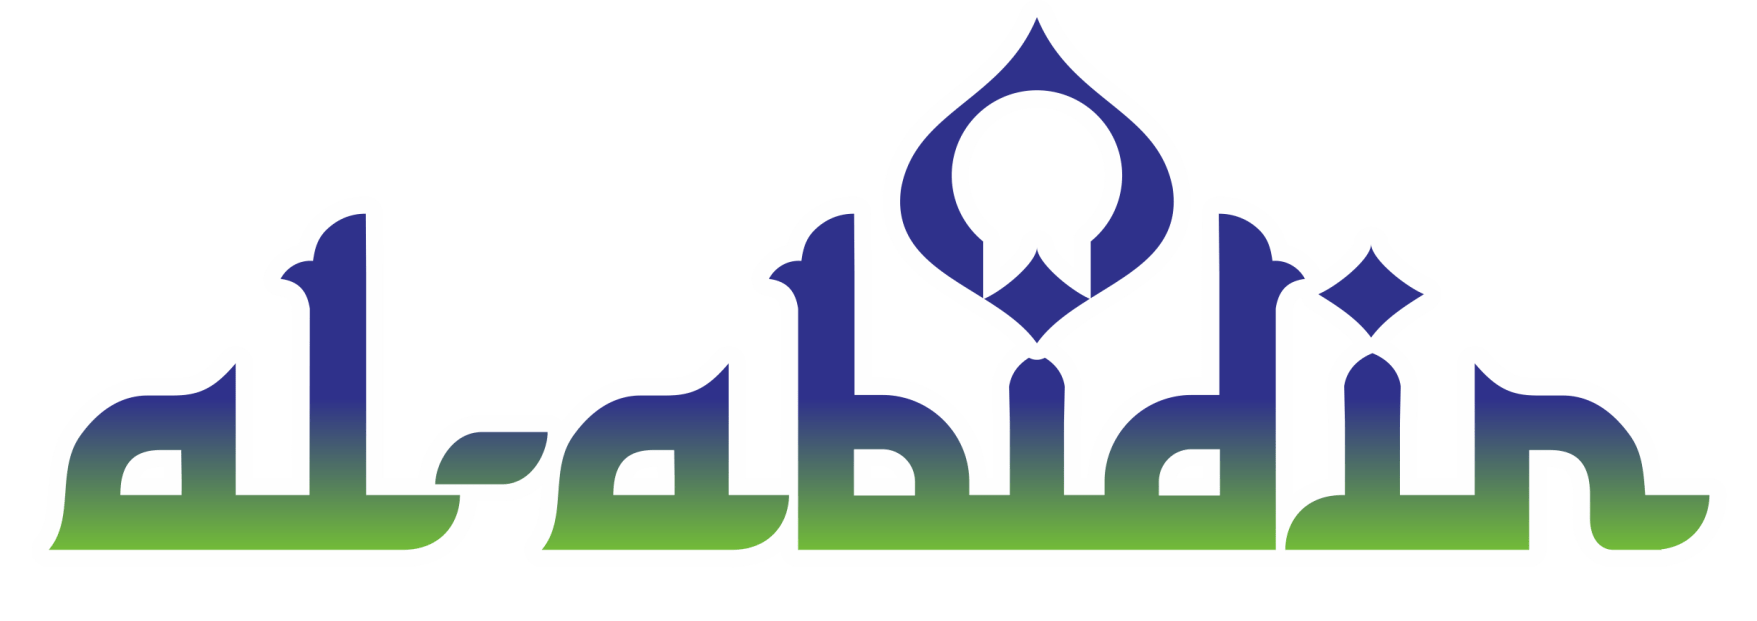 Yayasan Al Abidin Surakarta